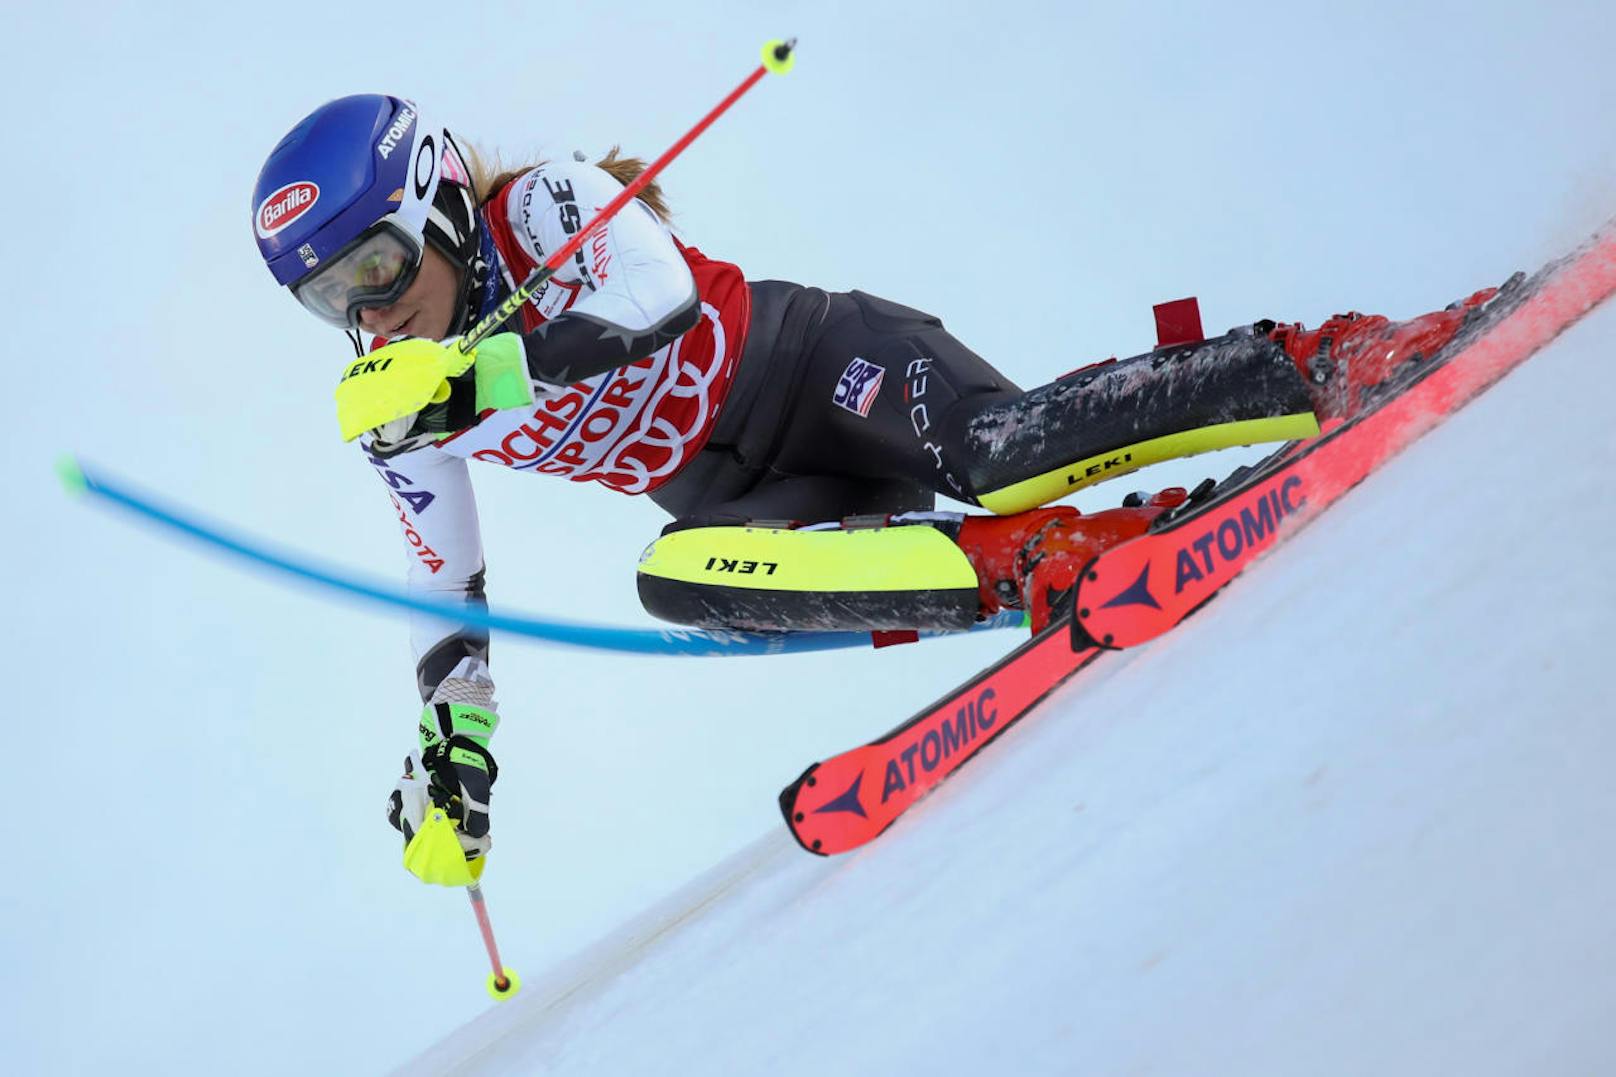 Beim ersten Saison-Slalom in Levi (Fin) schlug Shiffrin zu. Die Titelverteidigerin im Gesamt-Weltcup gewann ihr 44. Rennen - im Alter von zarten 23 Jahren.